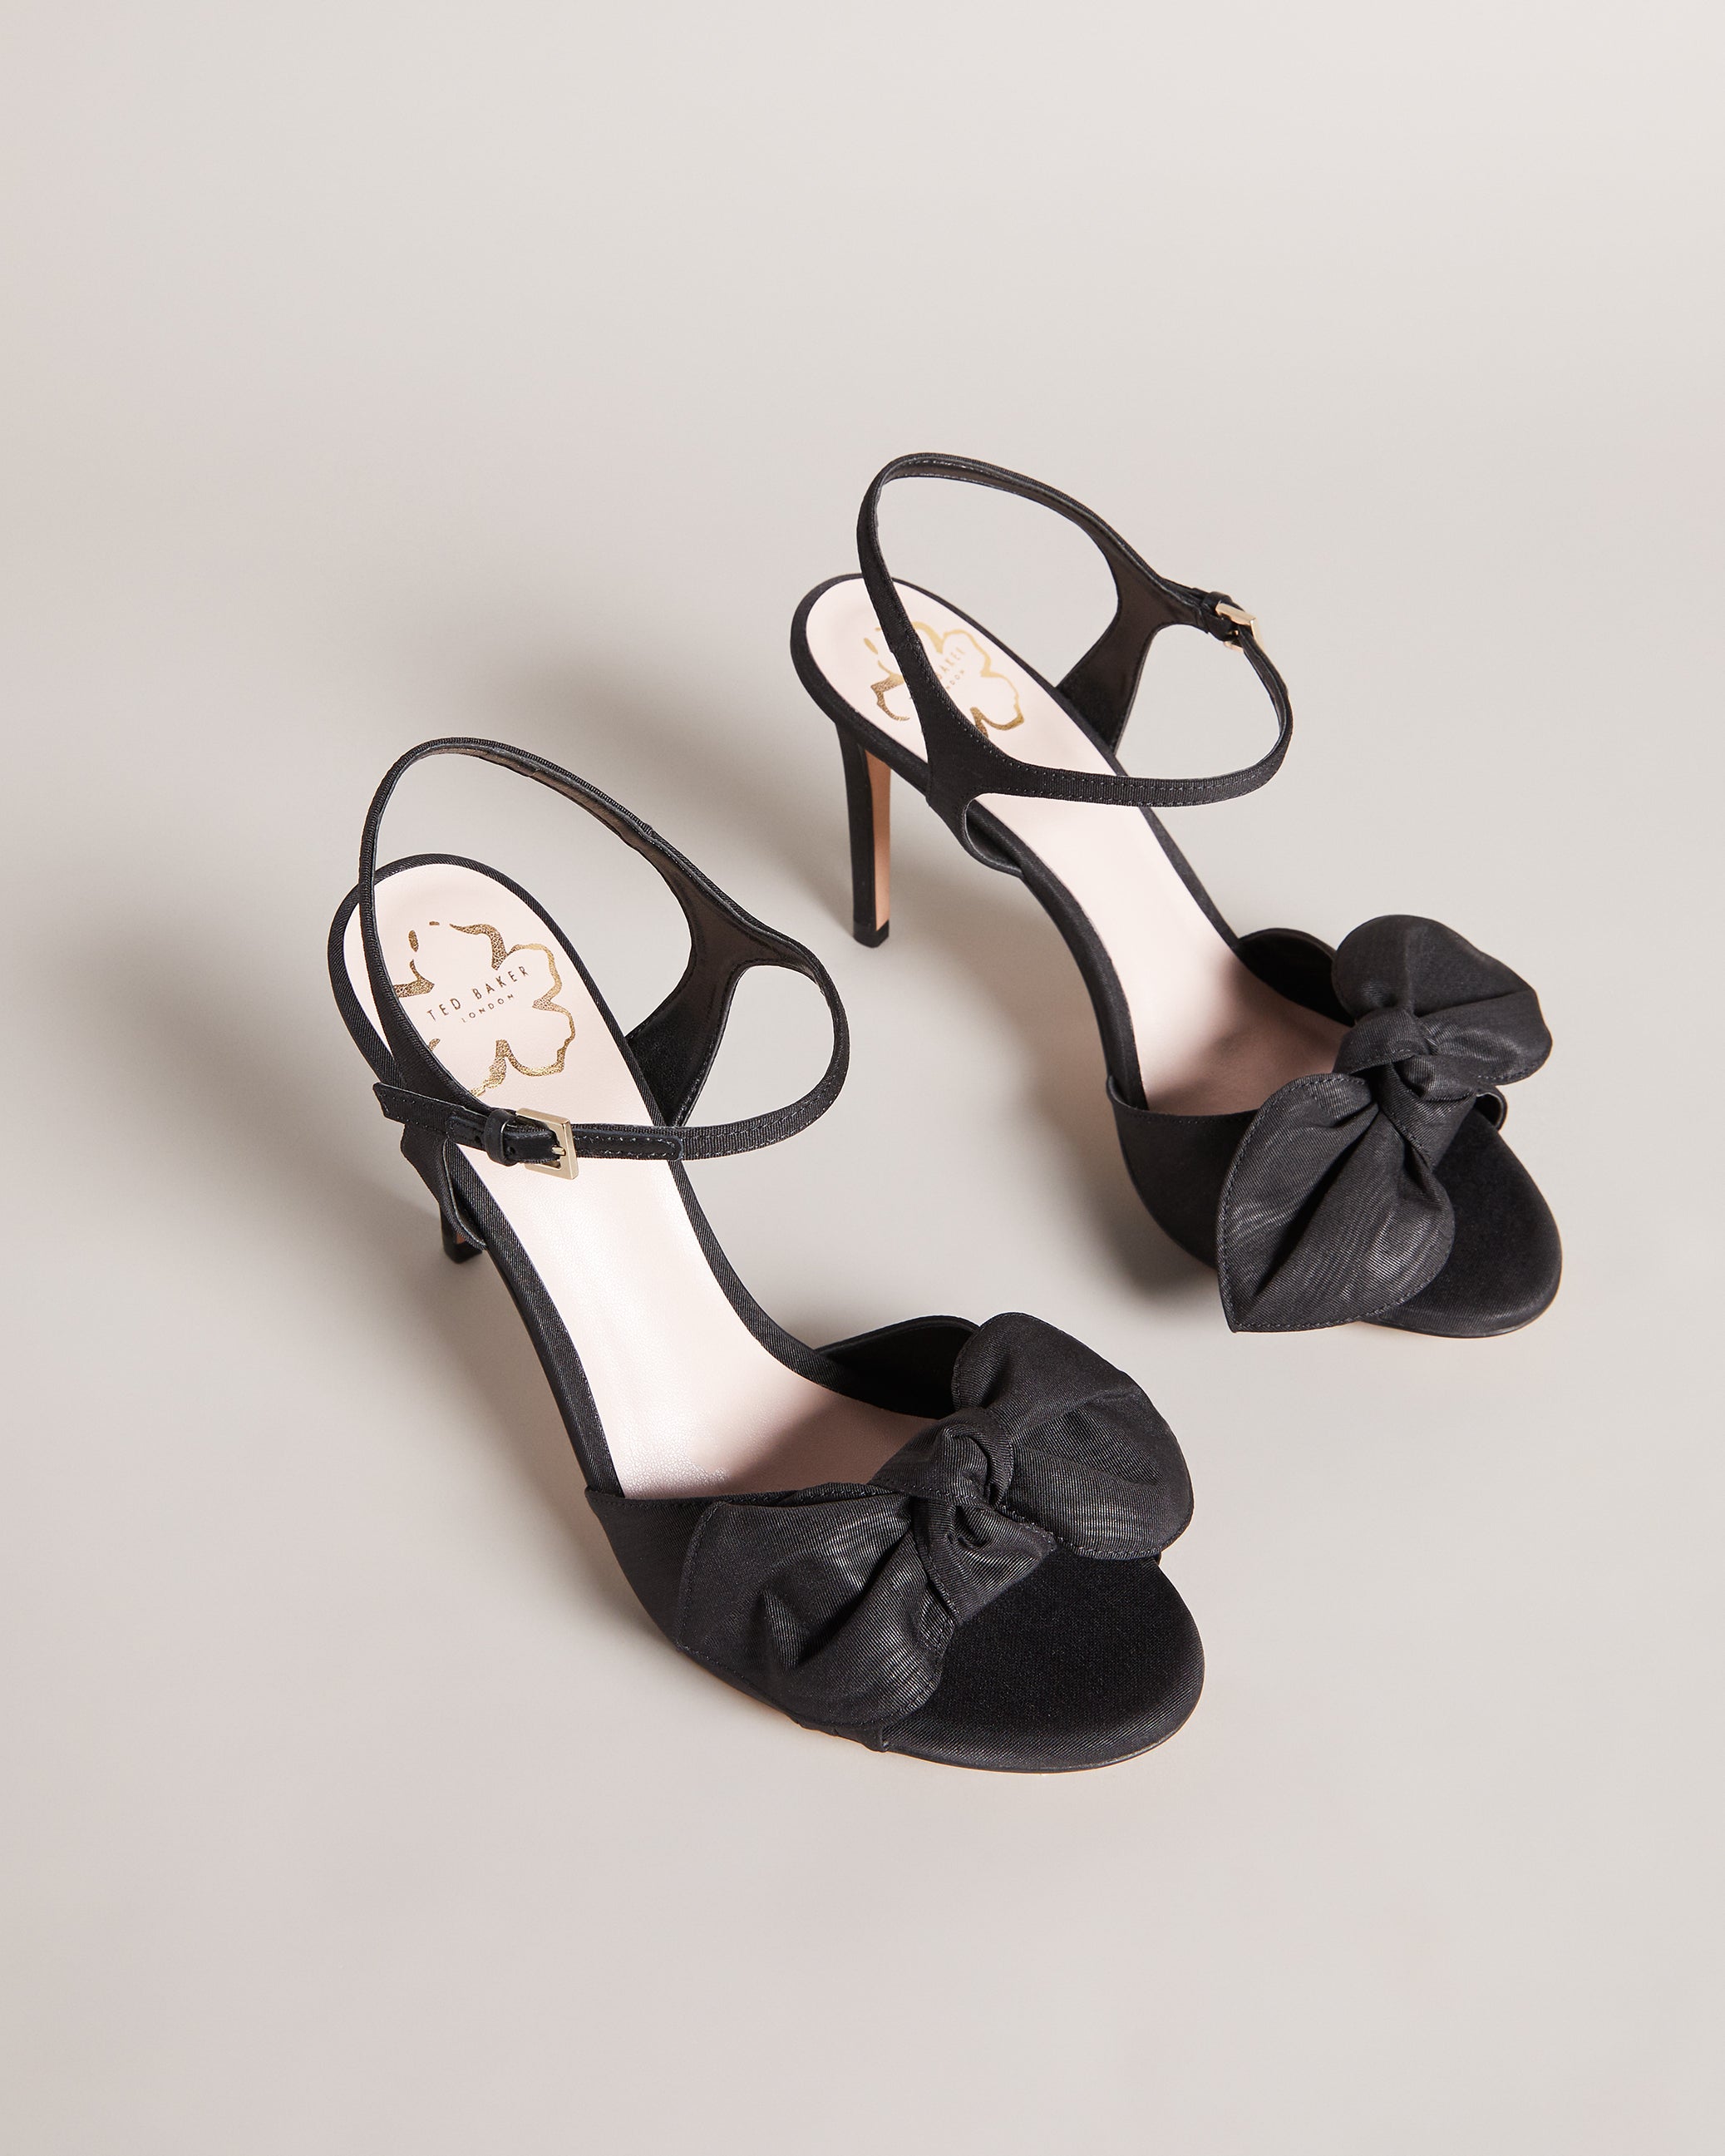 Ted Baker London Rafeek Bow Flip Flop BLACK/WHITE Sandals size 6 US | eBay